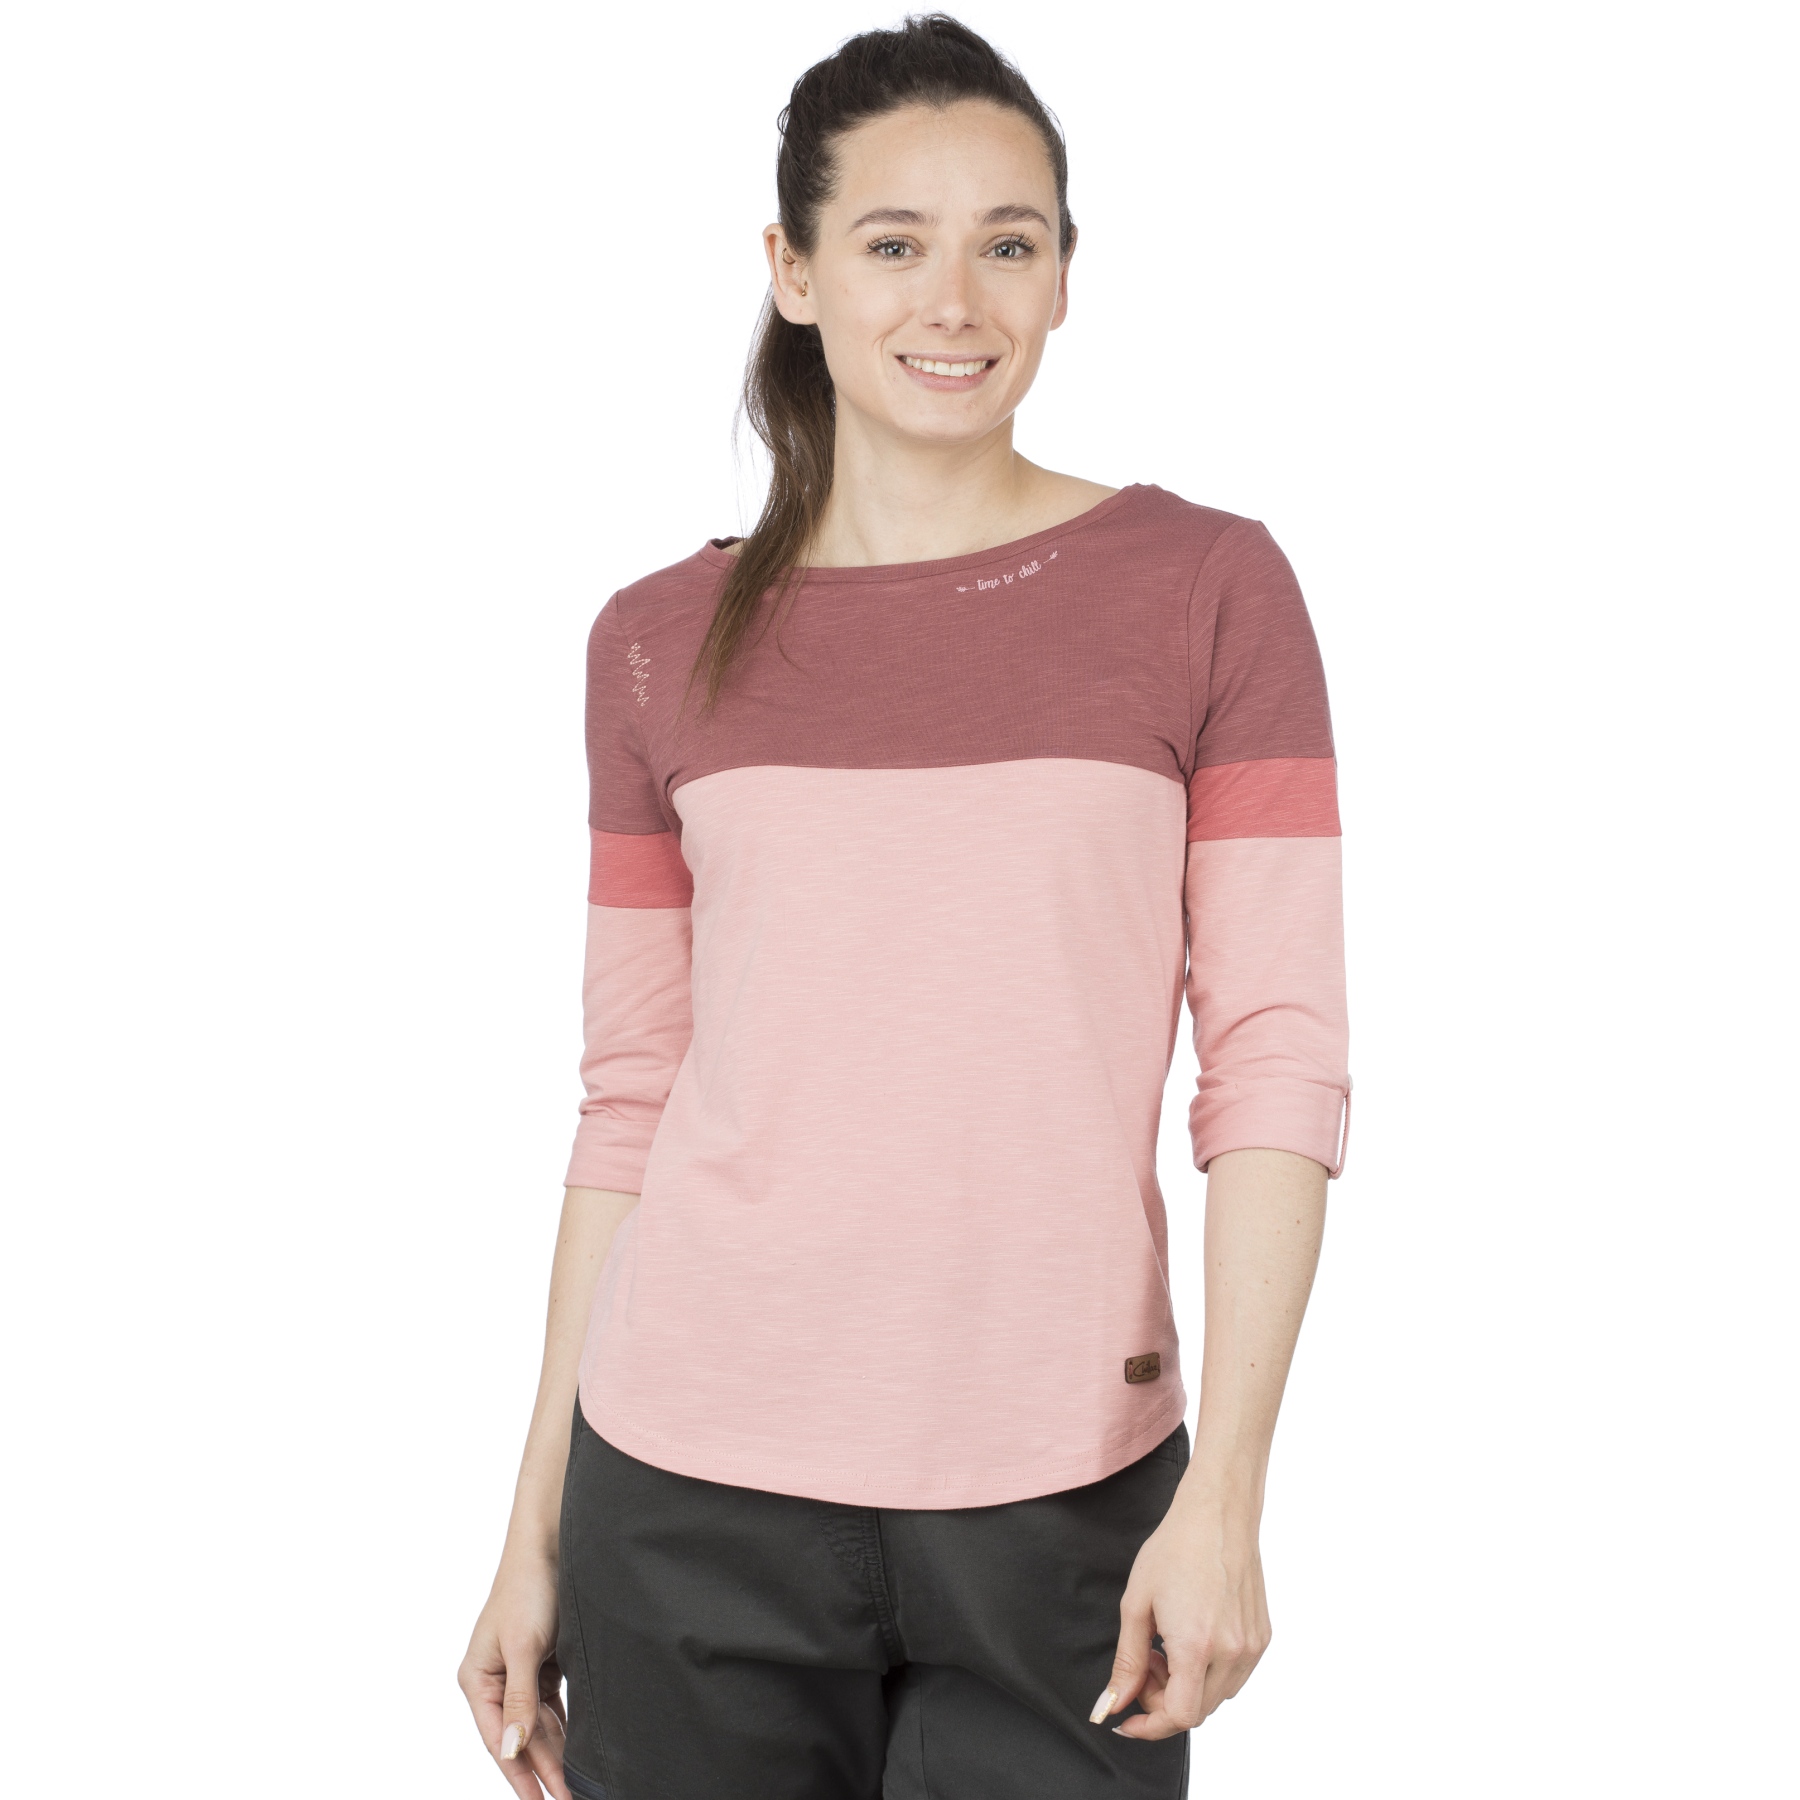 Picture of Chillaz Balanced 3/4 Sleeve Shirt Women - dark applebutter/rose